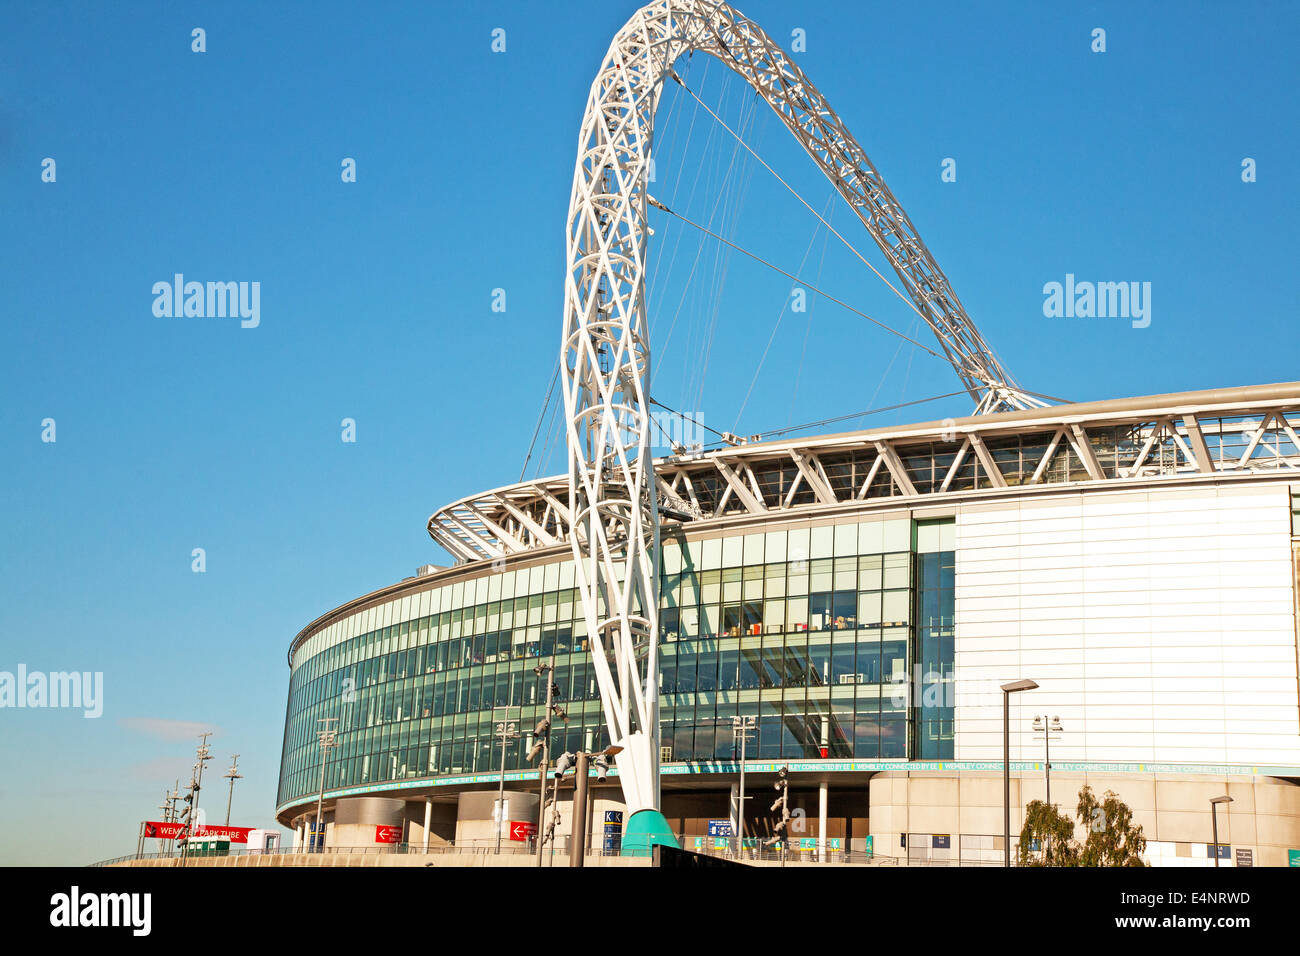 Wembley stadium,London,UK Stock Photo